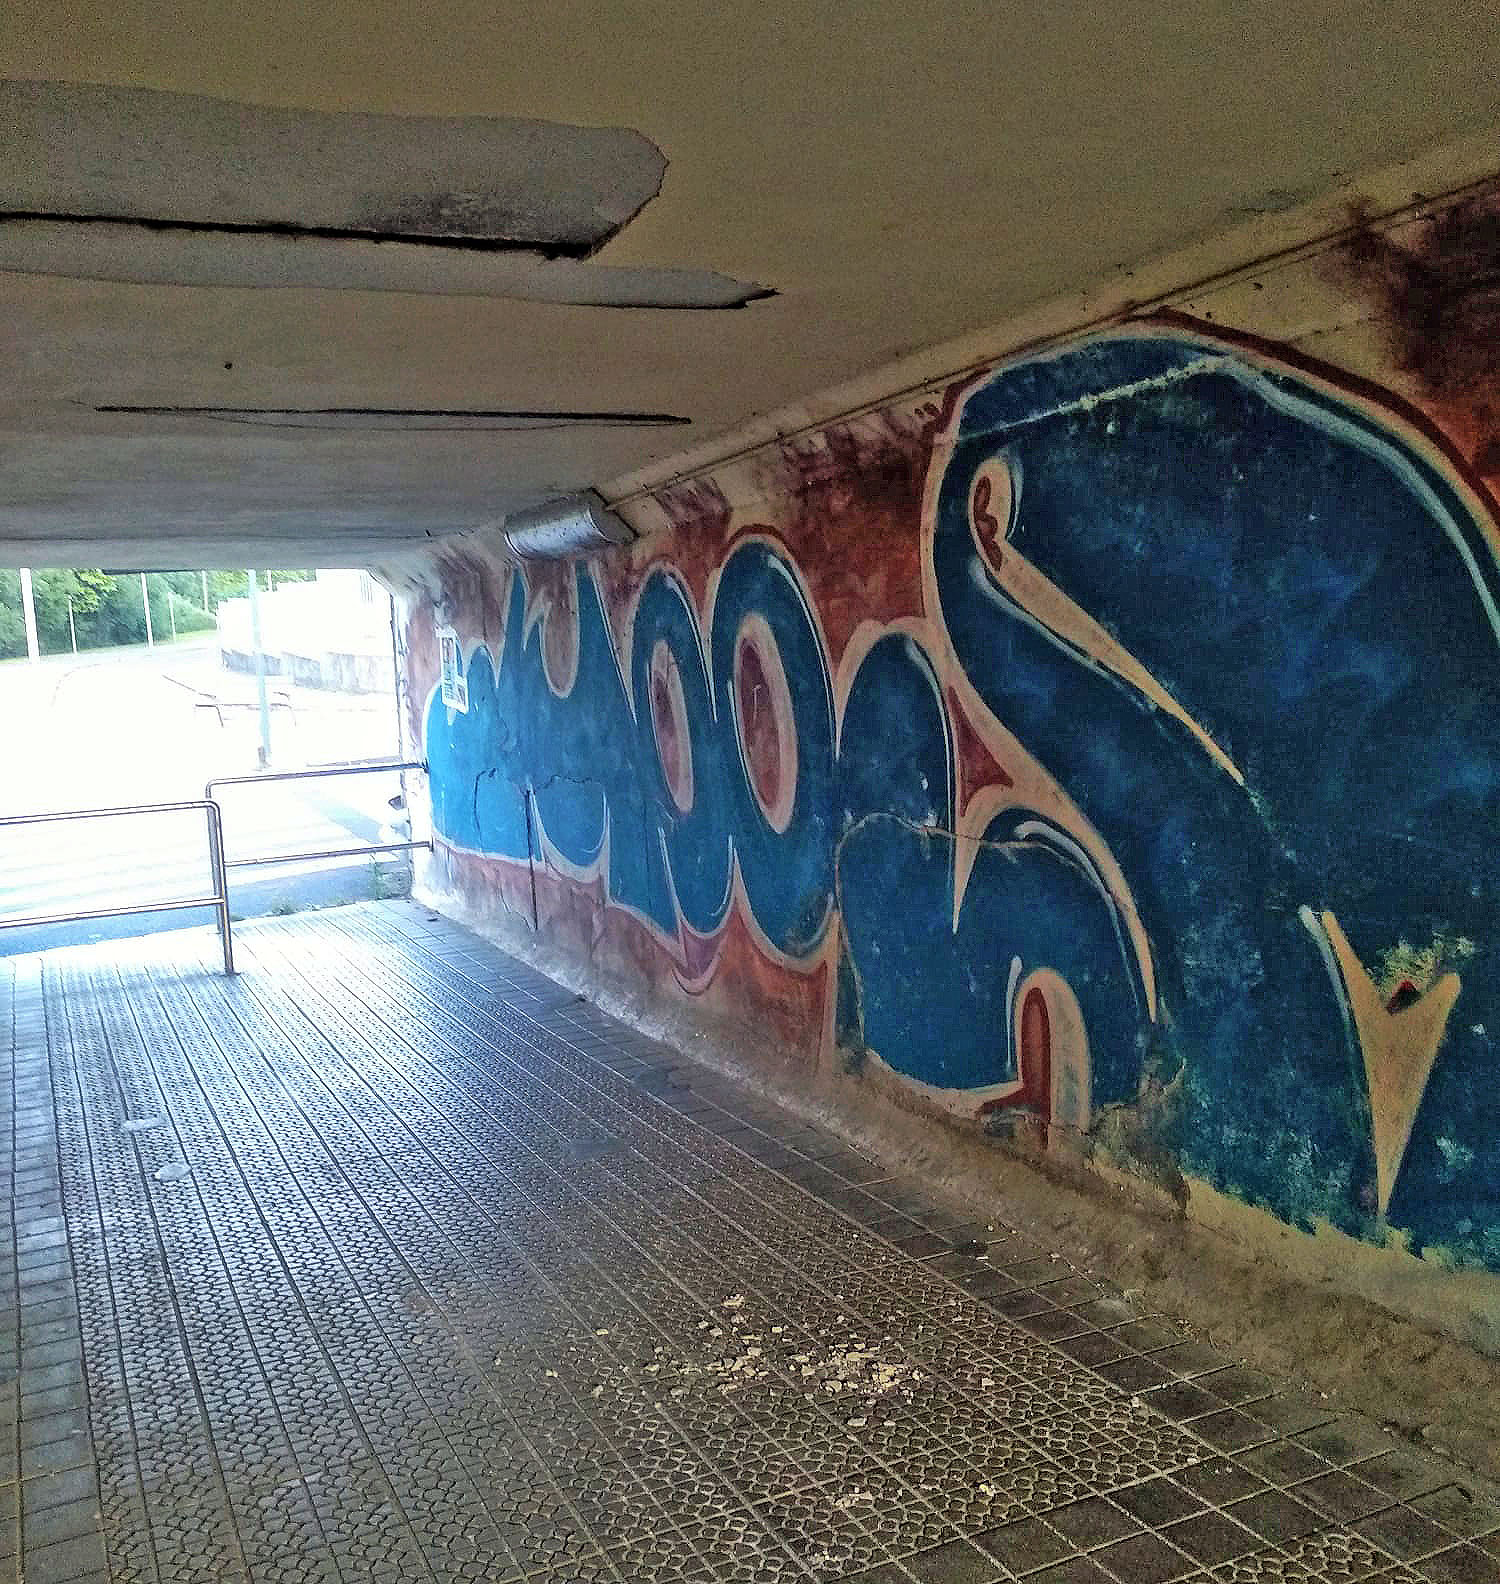 Foto-denuncia: Desprendimientos en el túnel de San Fausto